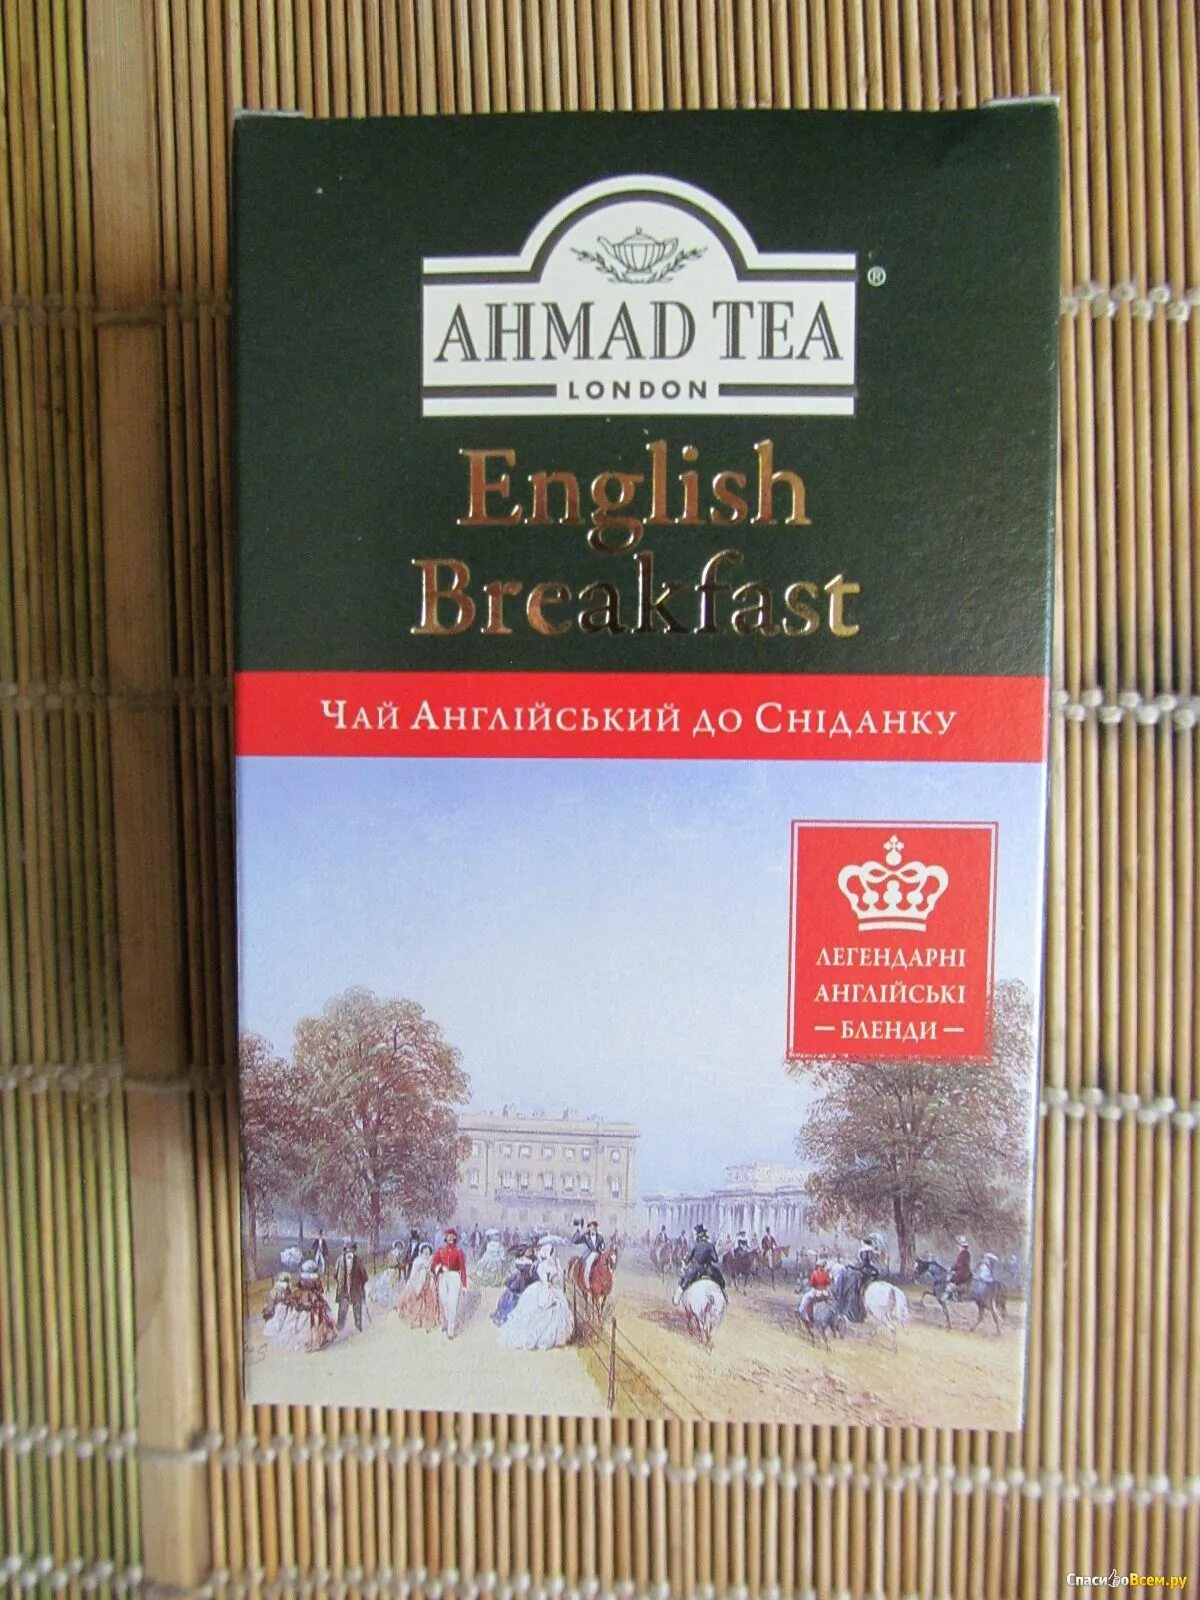 Ахмад английский завтрак. Чай Ahmad Tea English Breakfast. Ахмад ти английский завтрак. Ахмад ти чай Инглиш Брекфаст. Чай Ахмад английский завтрак 100 гр.